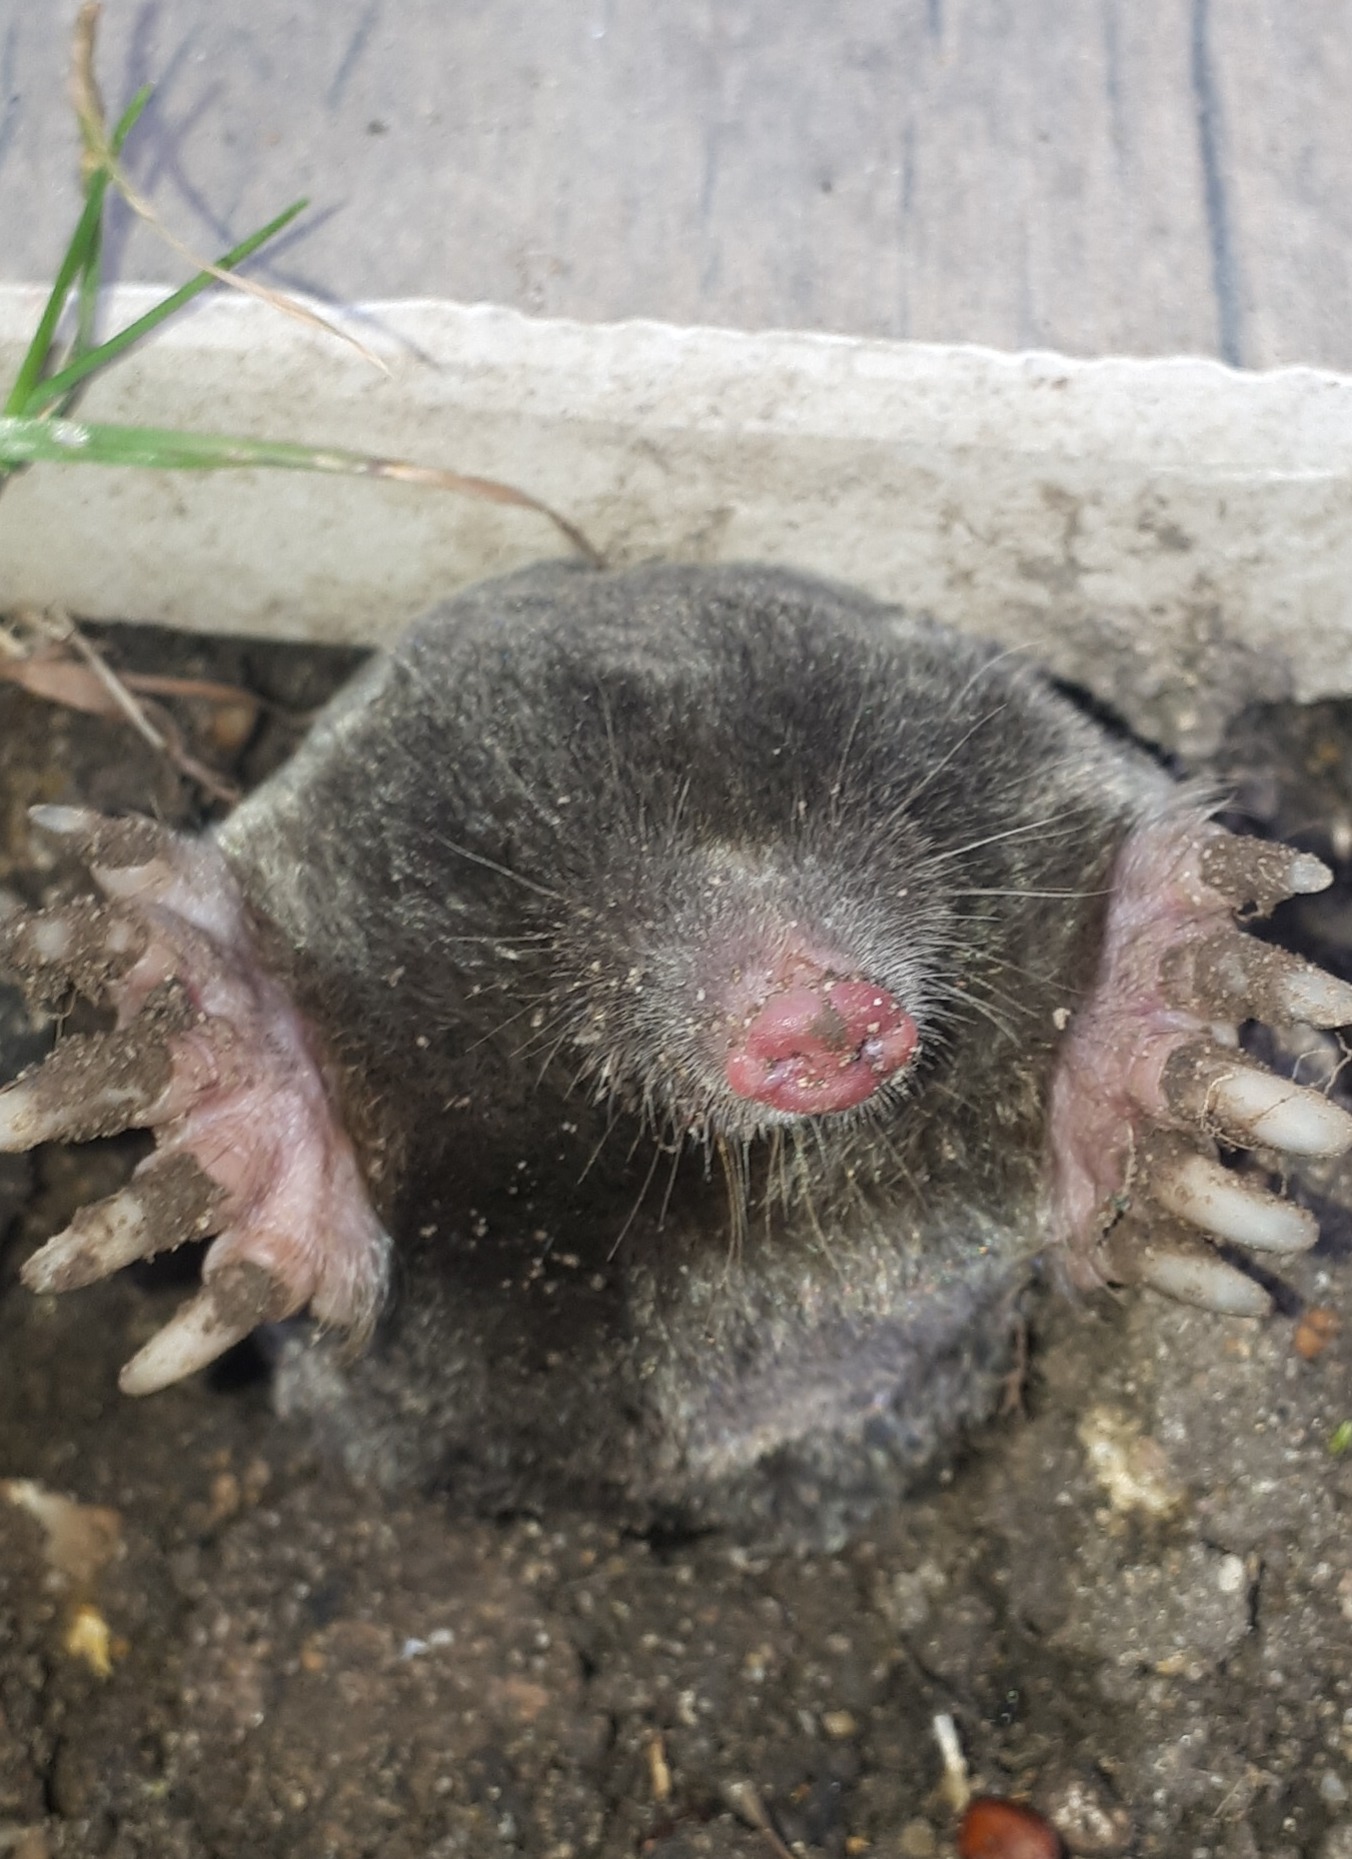 Mole by a patio